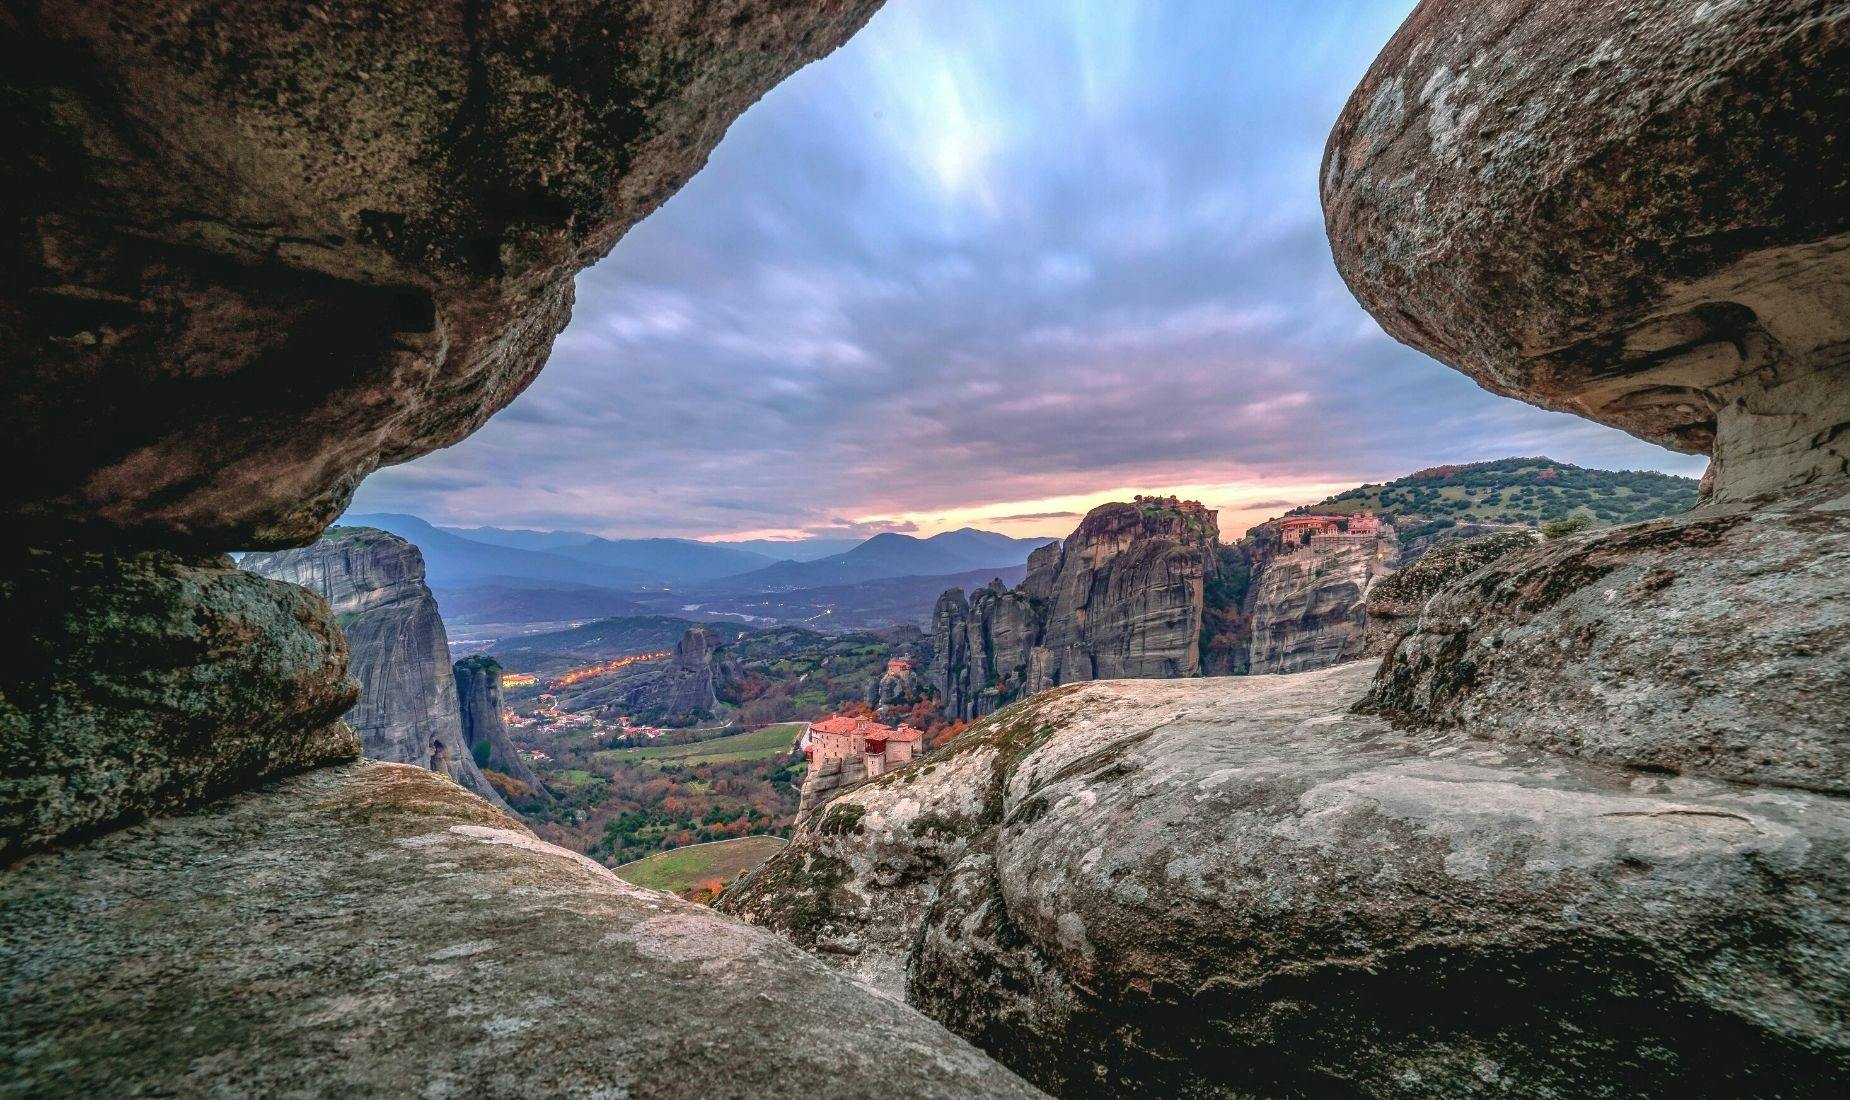 Caminata al atardecer a las cuevas secretas de Meteora desde Kalambaka